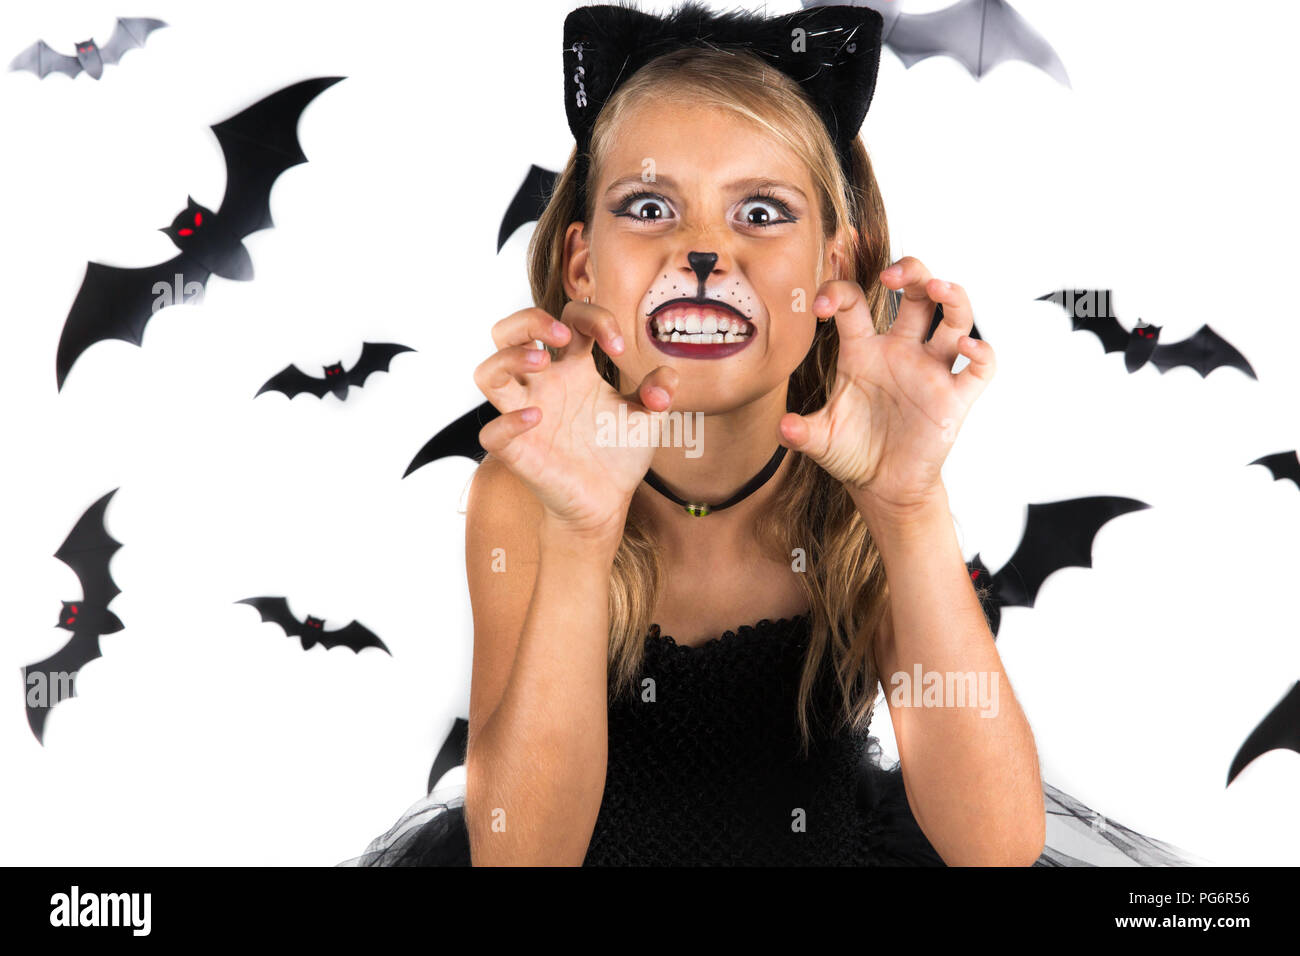 Spooky Ragazza di Halloween con Halloween costume di un gatto nero vestita a festa di Halloween o zucca patch. I bambini di Halloween. Foto Stock